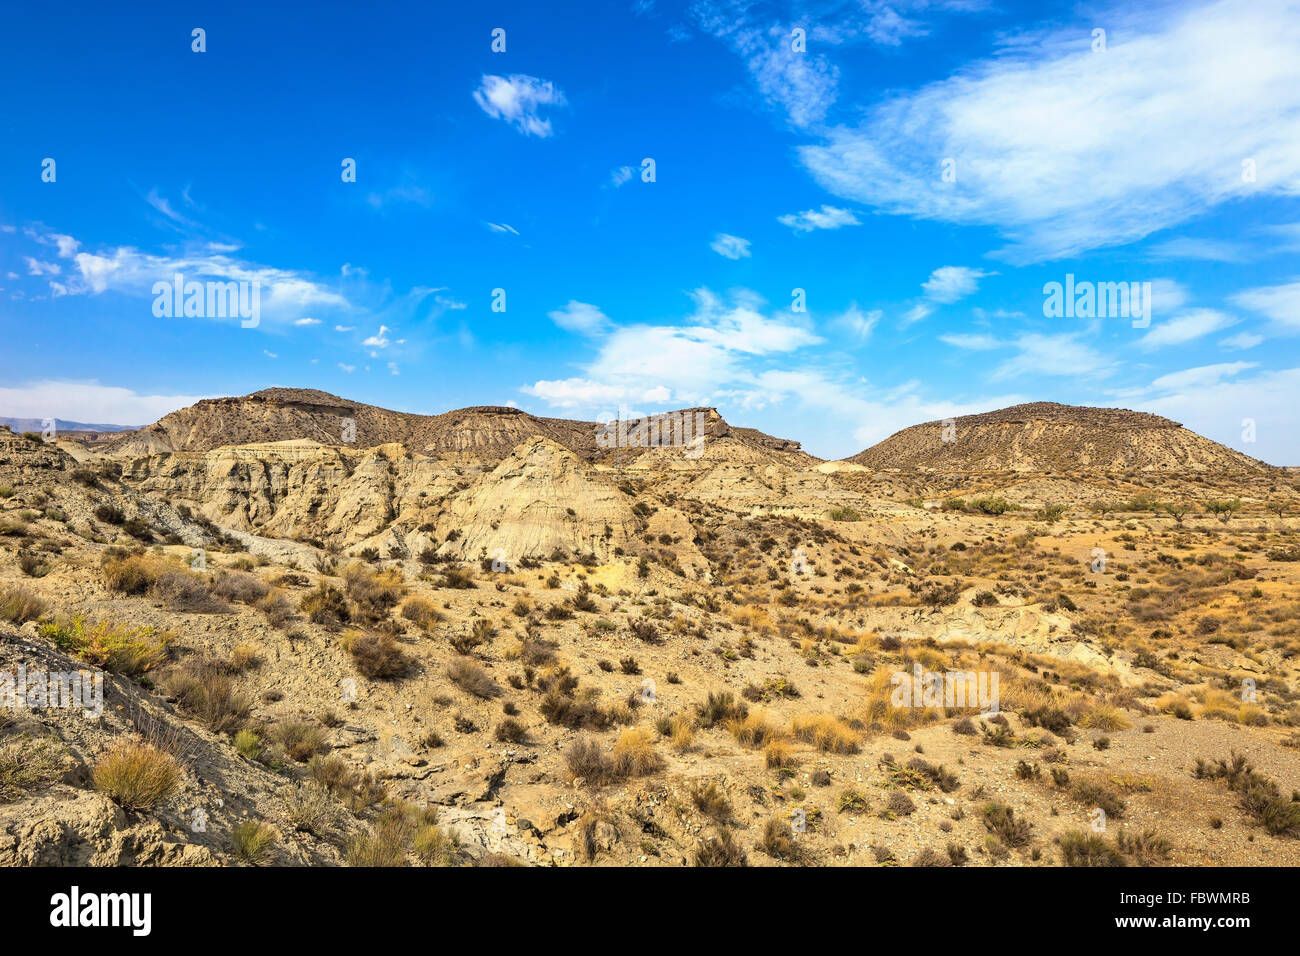 Montagnes du désert de Tabernas, en espagnol Desierto de Tabernas. L'Europe seulement désert. Almeria, Andalousie, espagne. Sauvages protégées Banque D'Images